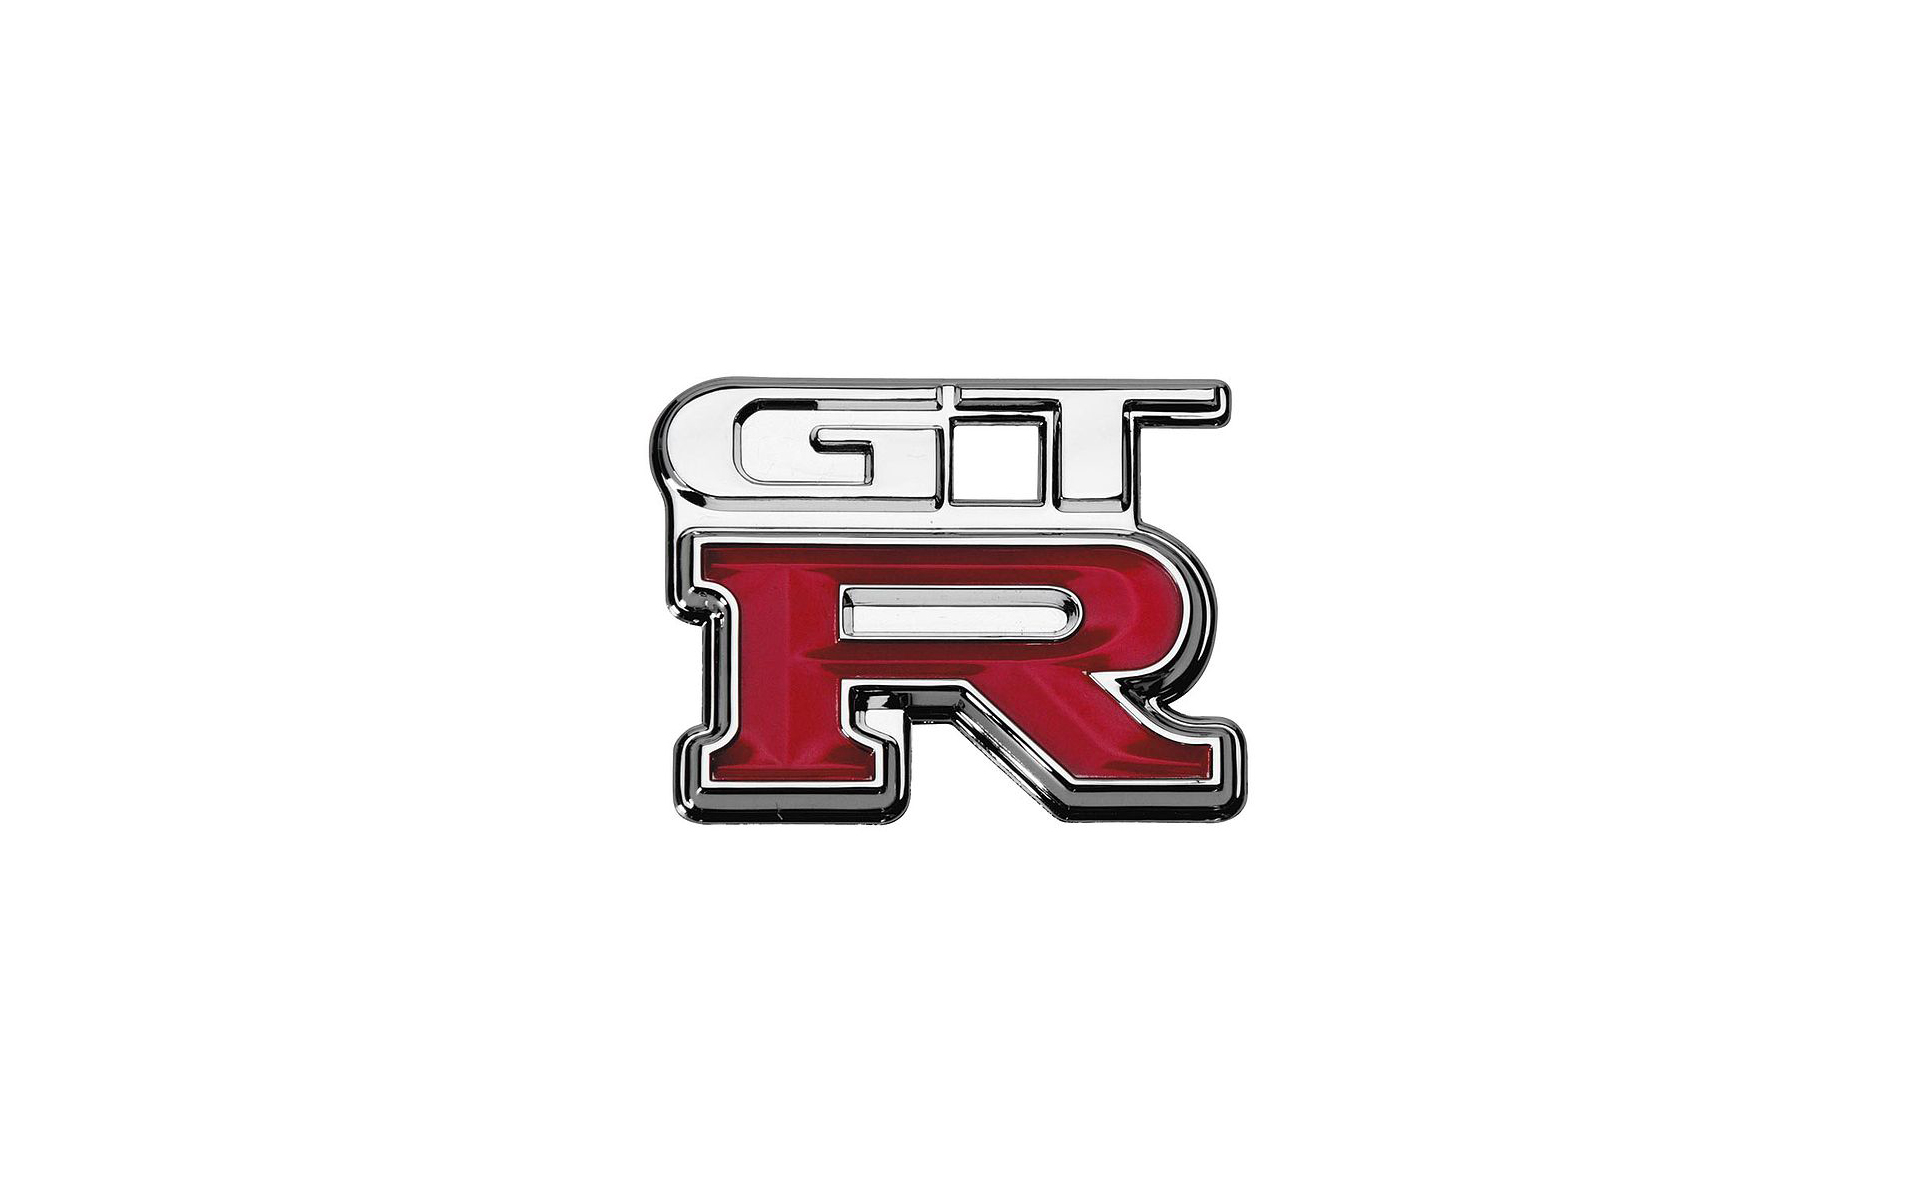 Skyline Gtr Logo